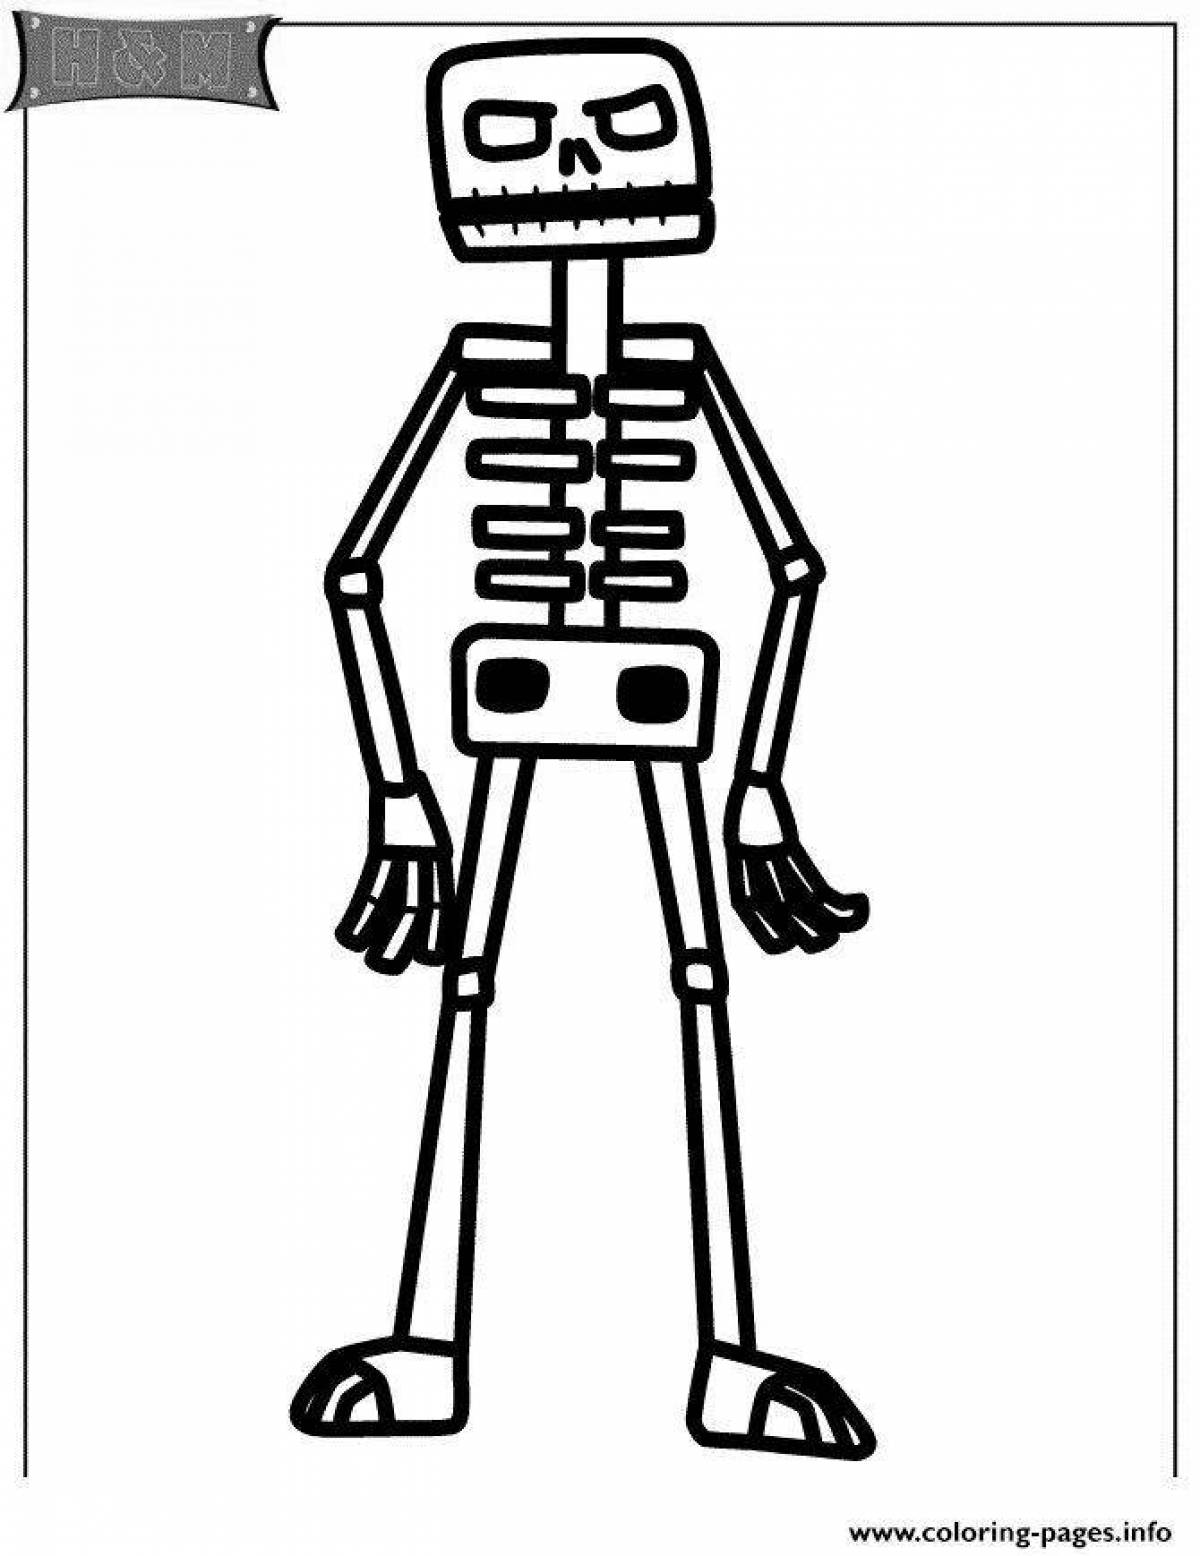 Funny minecraft skeleton